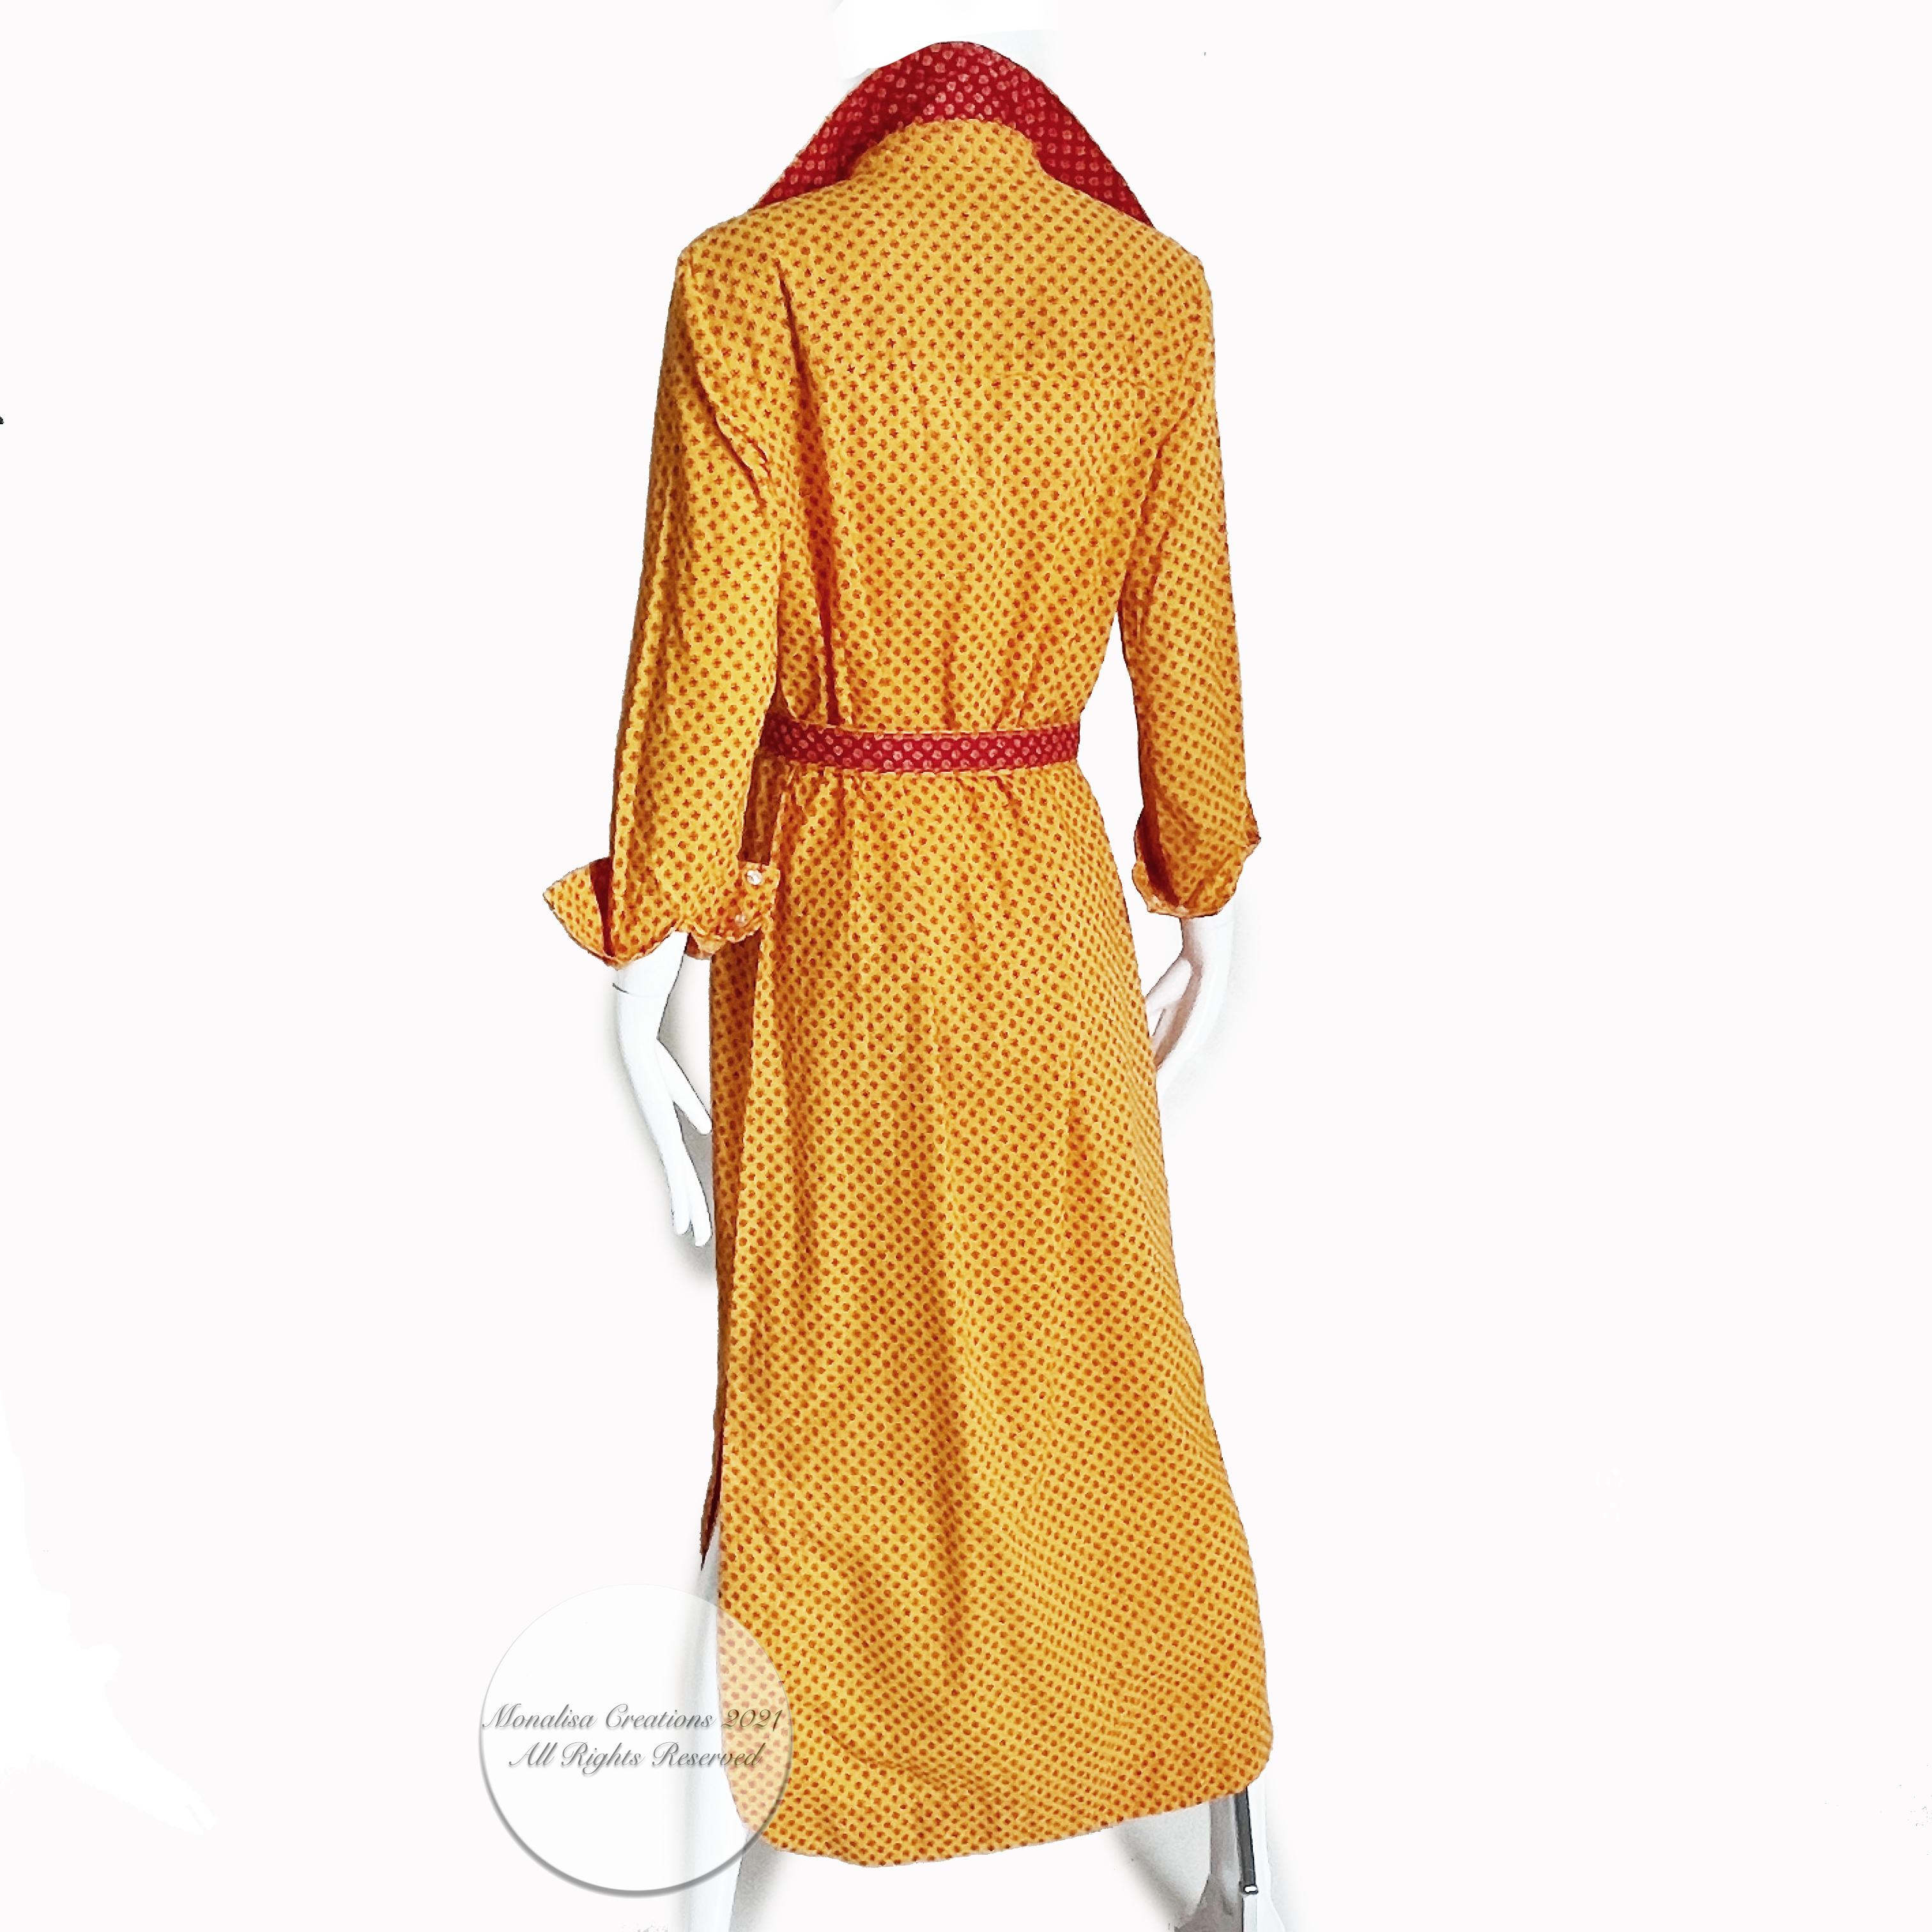 Geoffrey Beene Dress Button Front Cotton Shirtwaist + Belt Bold Daisy Print 70s 6